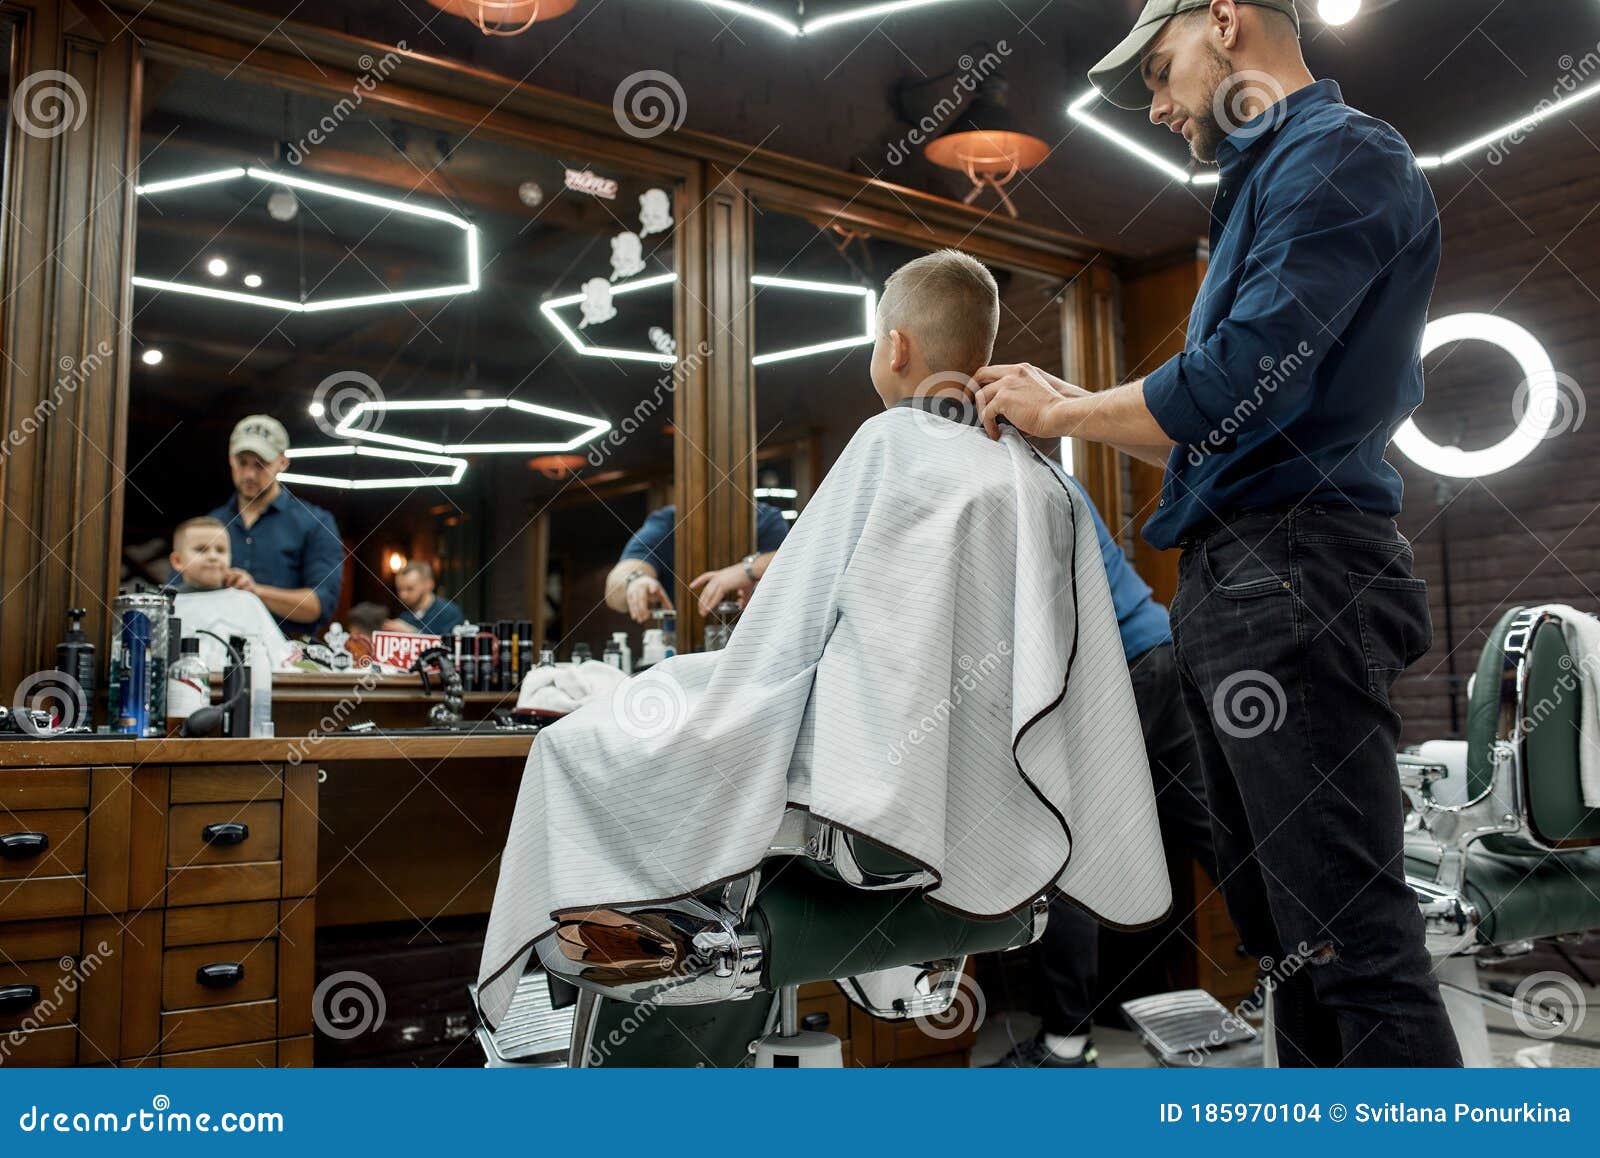 年轻人在理发店护理头发的服务理念照片摄影图片_ID:308326137-Veer图库